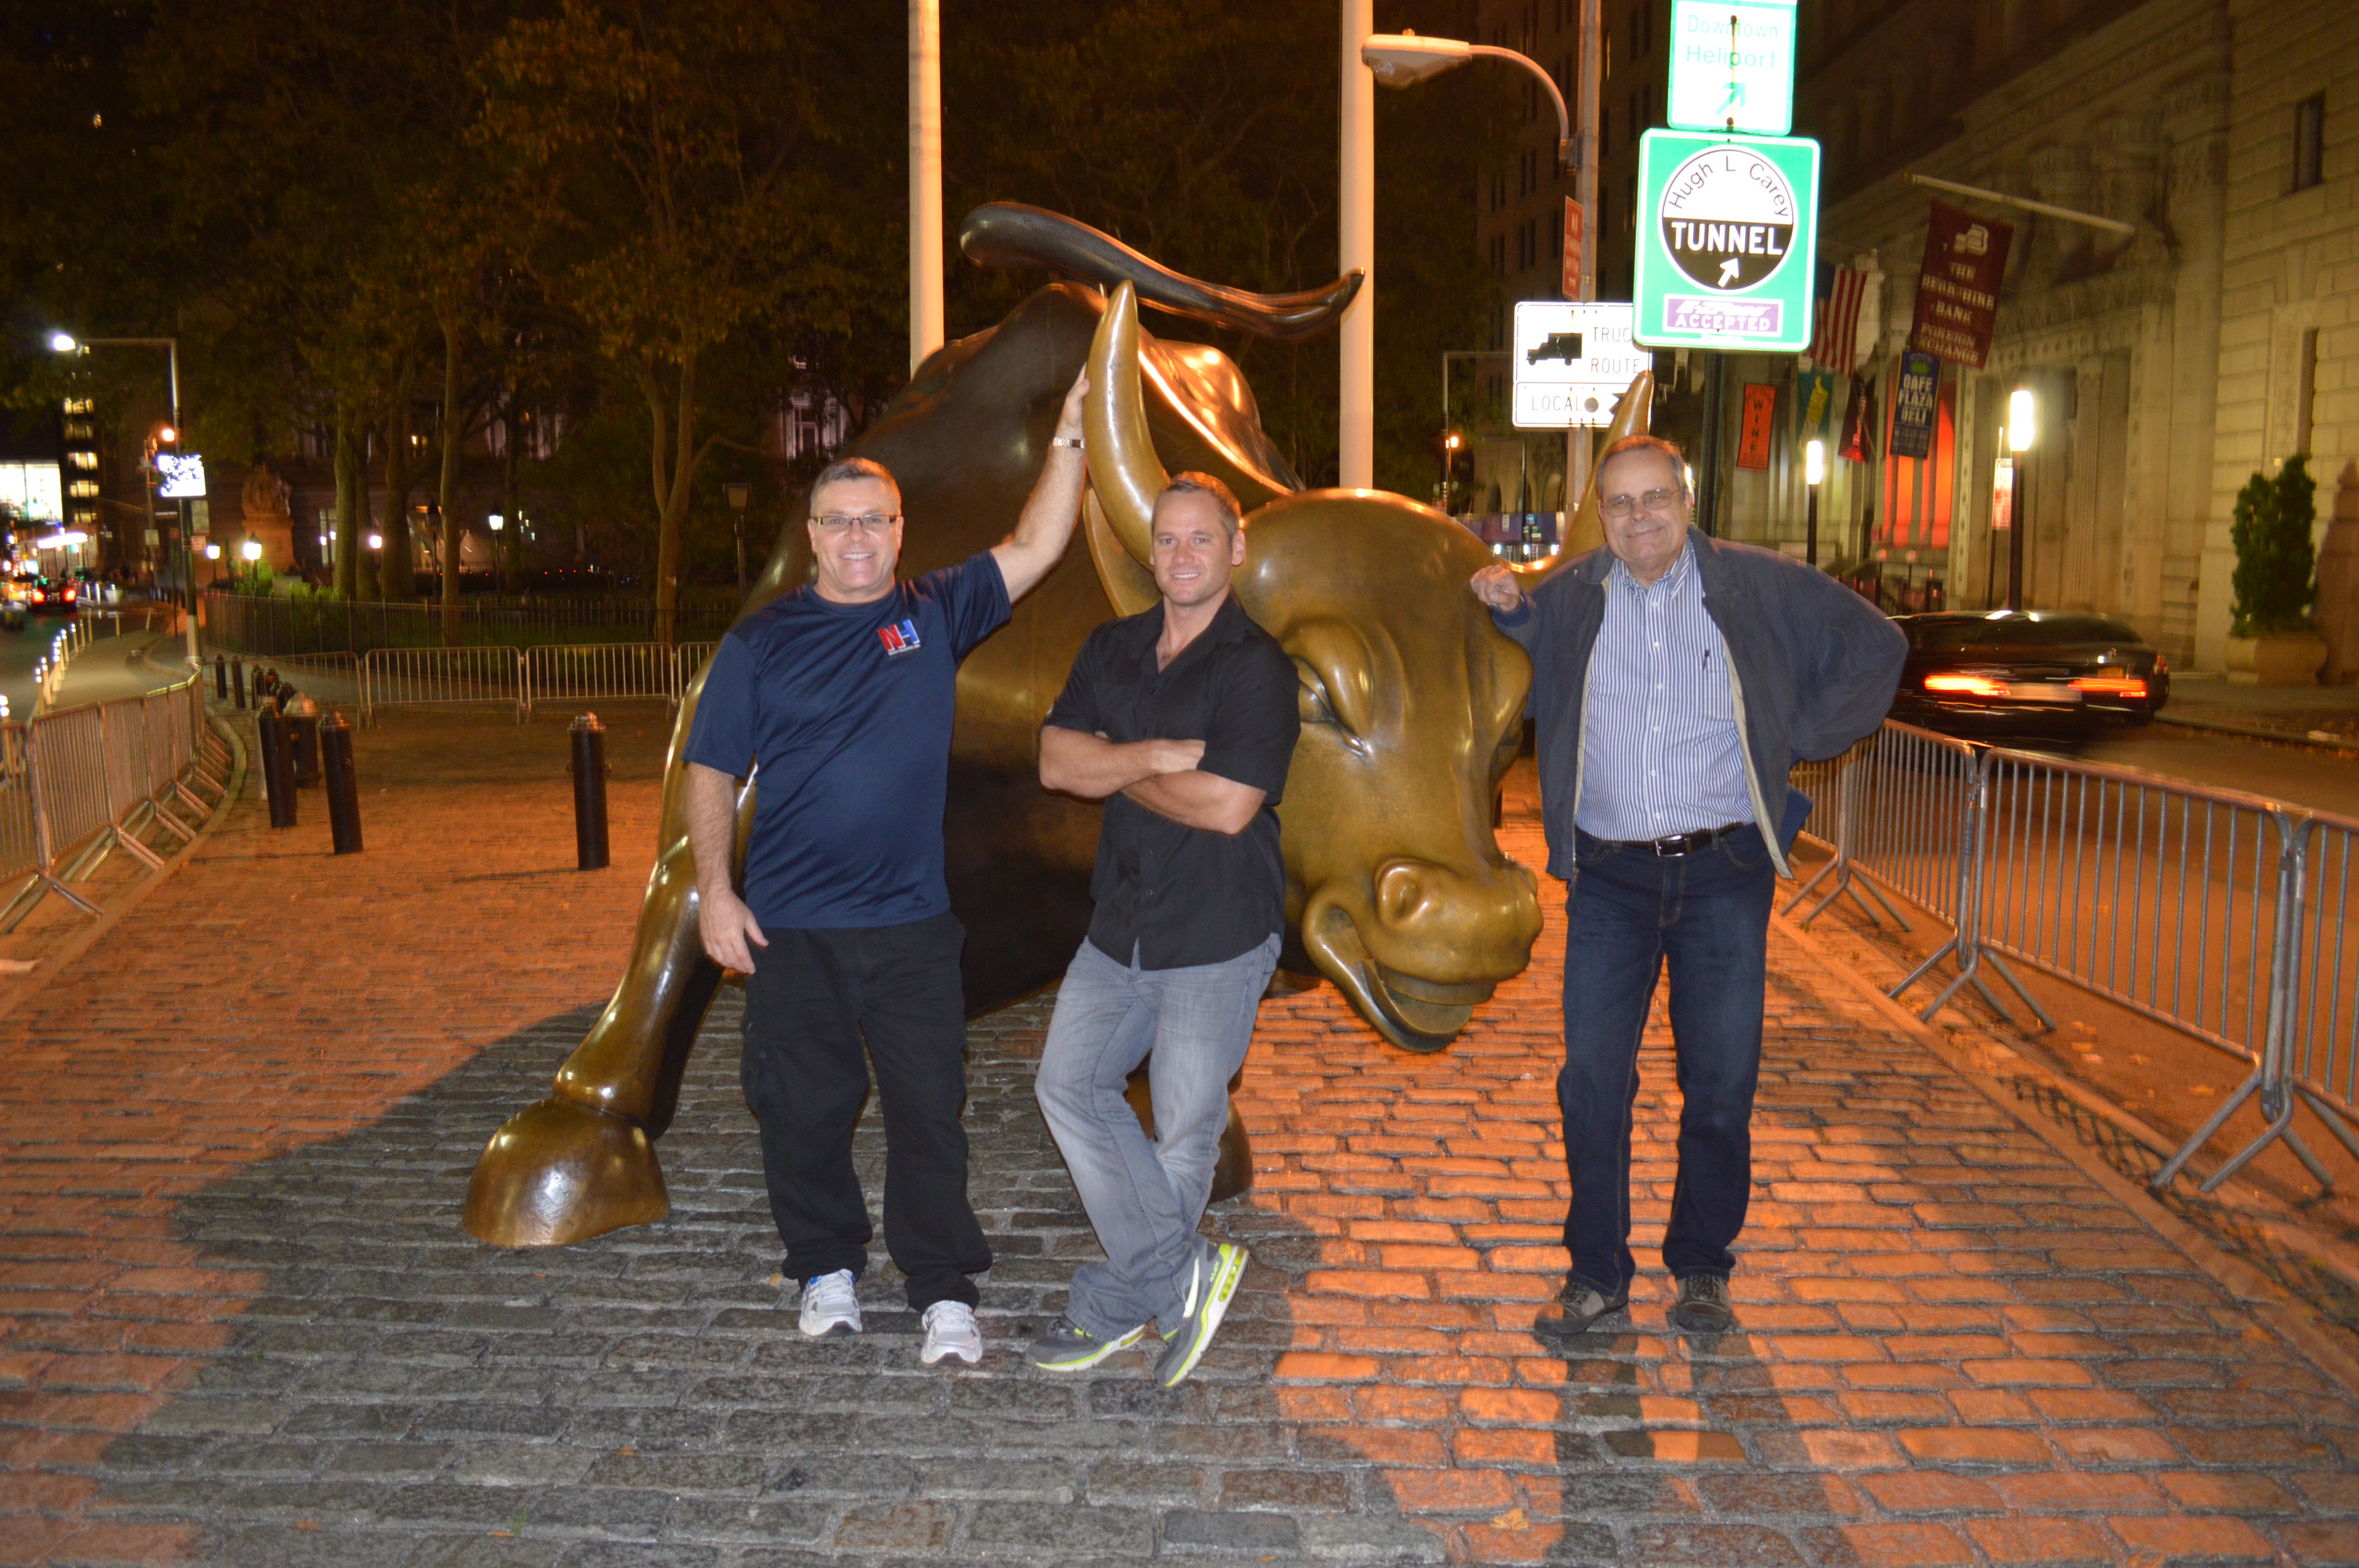 NYSE Bull near Wall St. NYC Robert Nash, Nick Peters and David Stewart